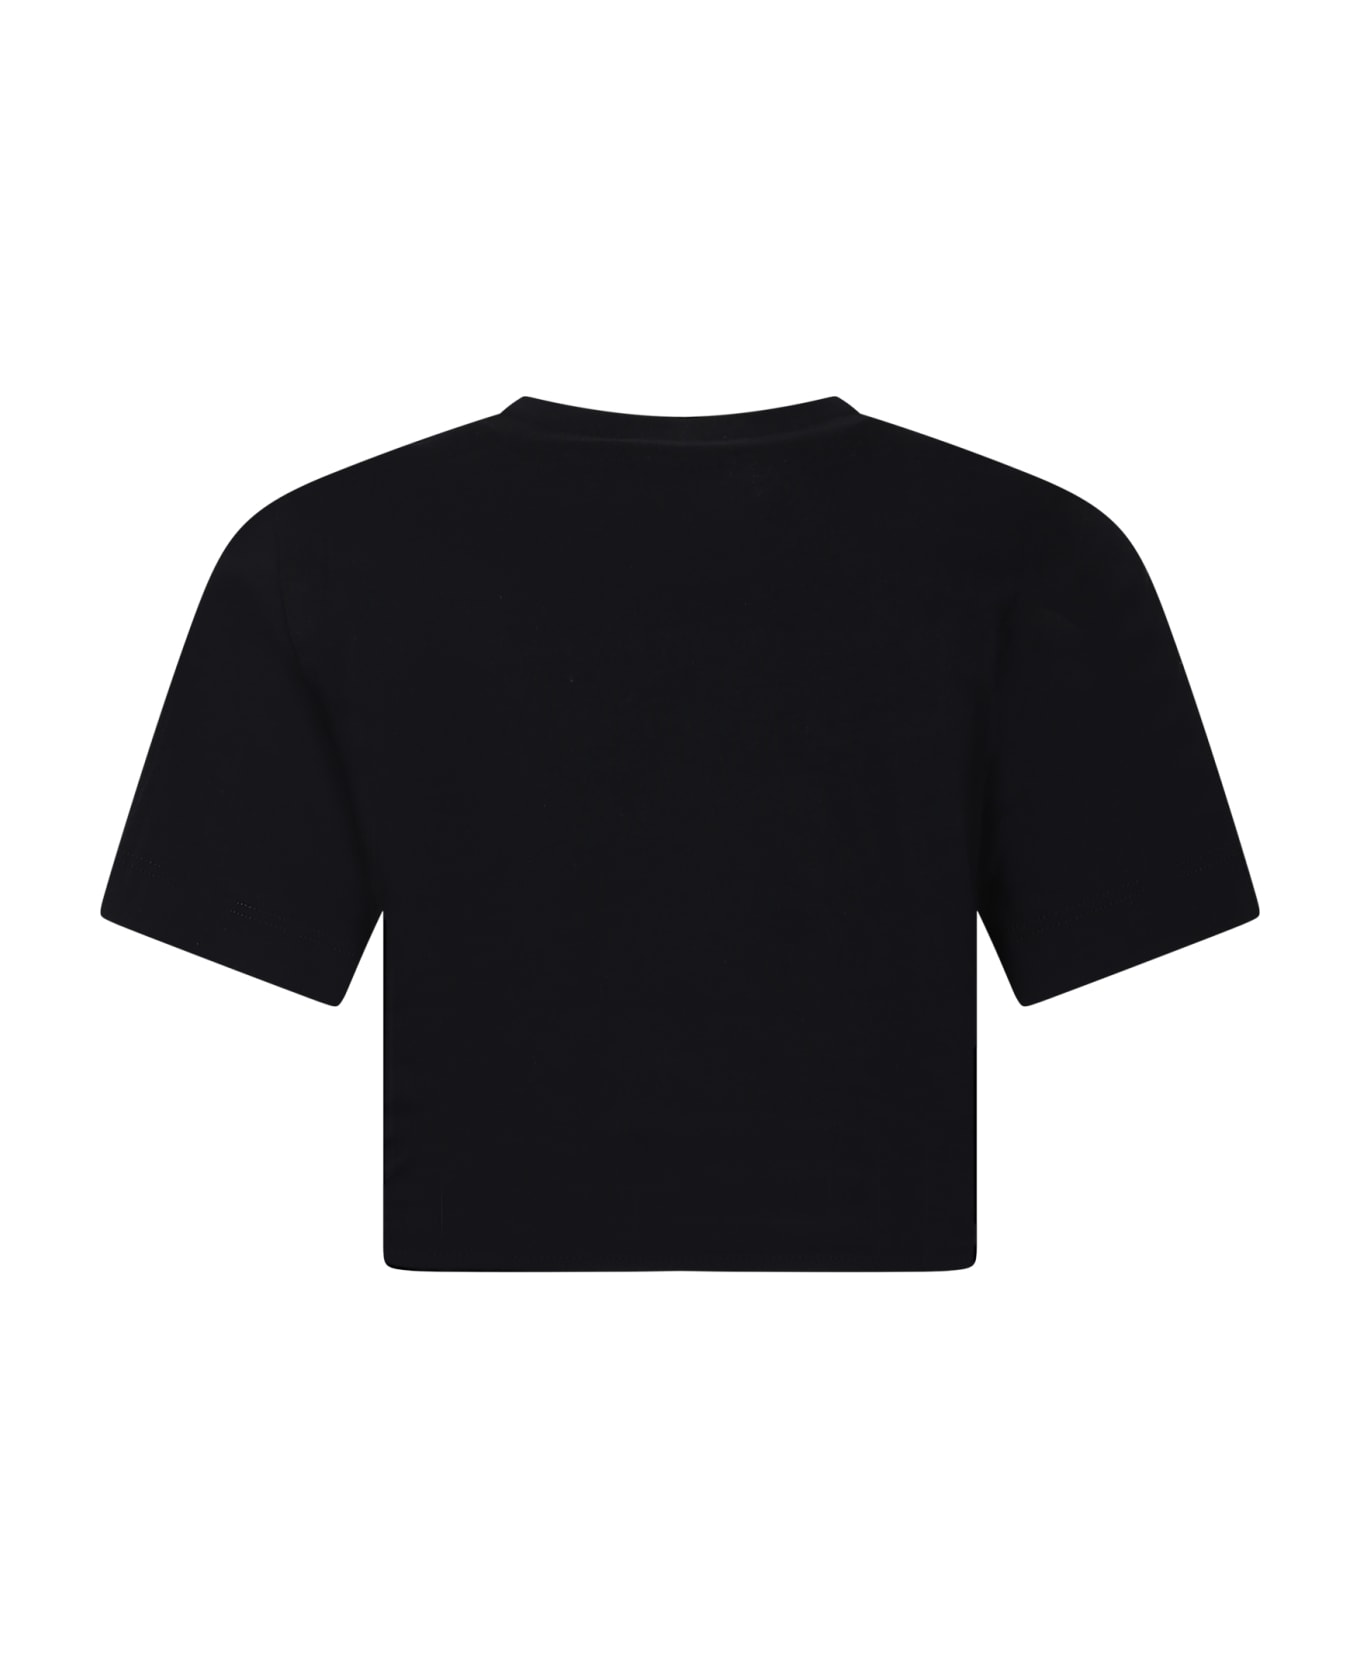 N.21 Black T-shirt For Girl - Black